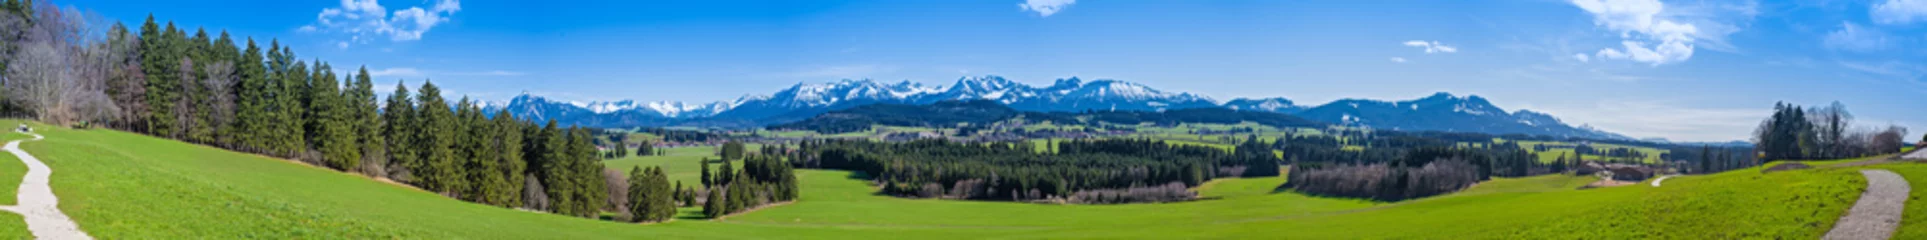 Fototapeten Wanderweg durch das Allgäu mit Blick auf die Alpen - hochauflösendes Panorama © reichdernatur